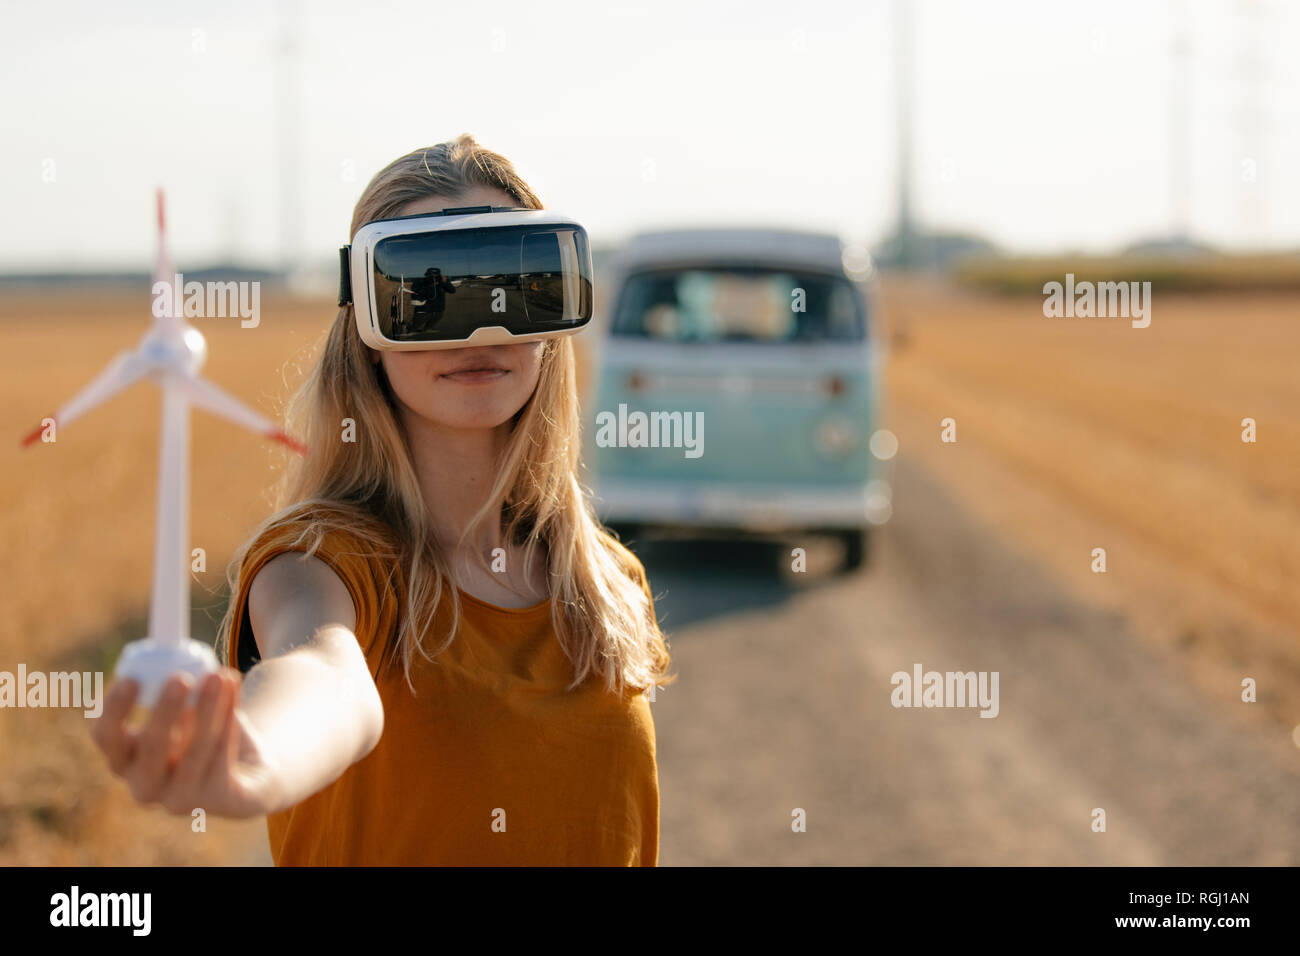 Junge Frau mit VR-Brille im Wohnmobil in ländlichen Landschaft Holding wind turbine Modell Stockfoto